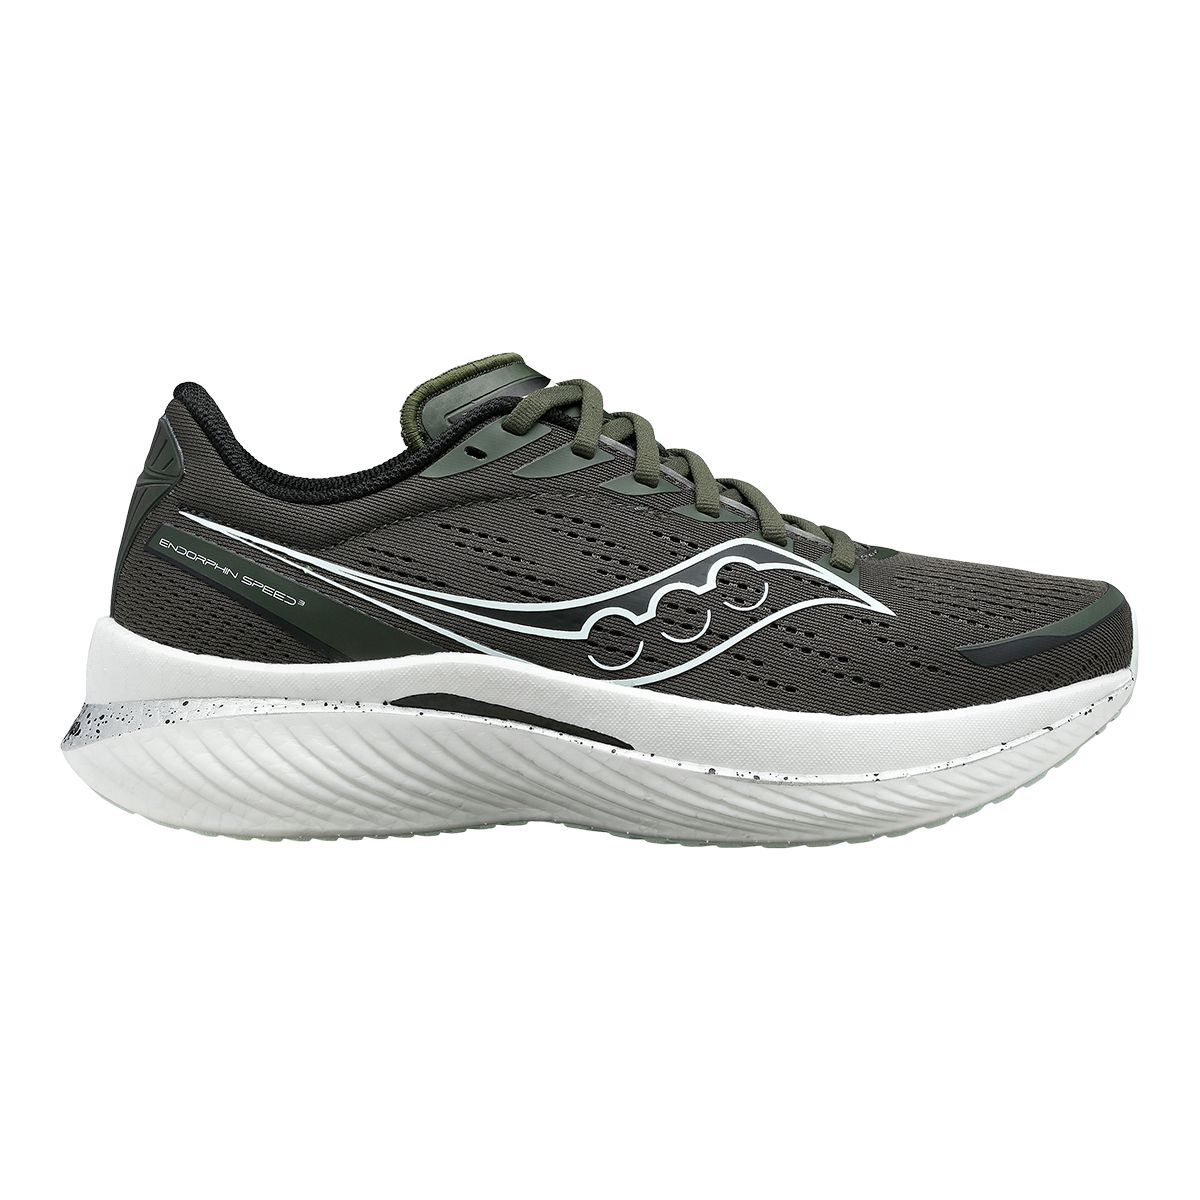 Saucony Men's Endorphin Speed 3 Running Shoes | Sportchek